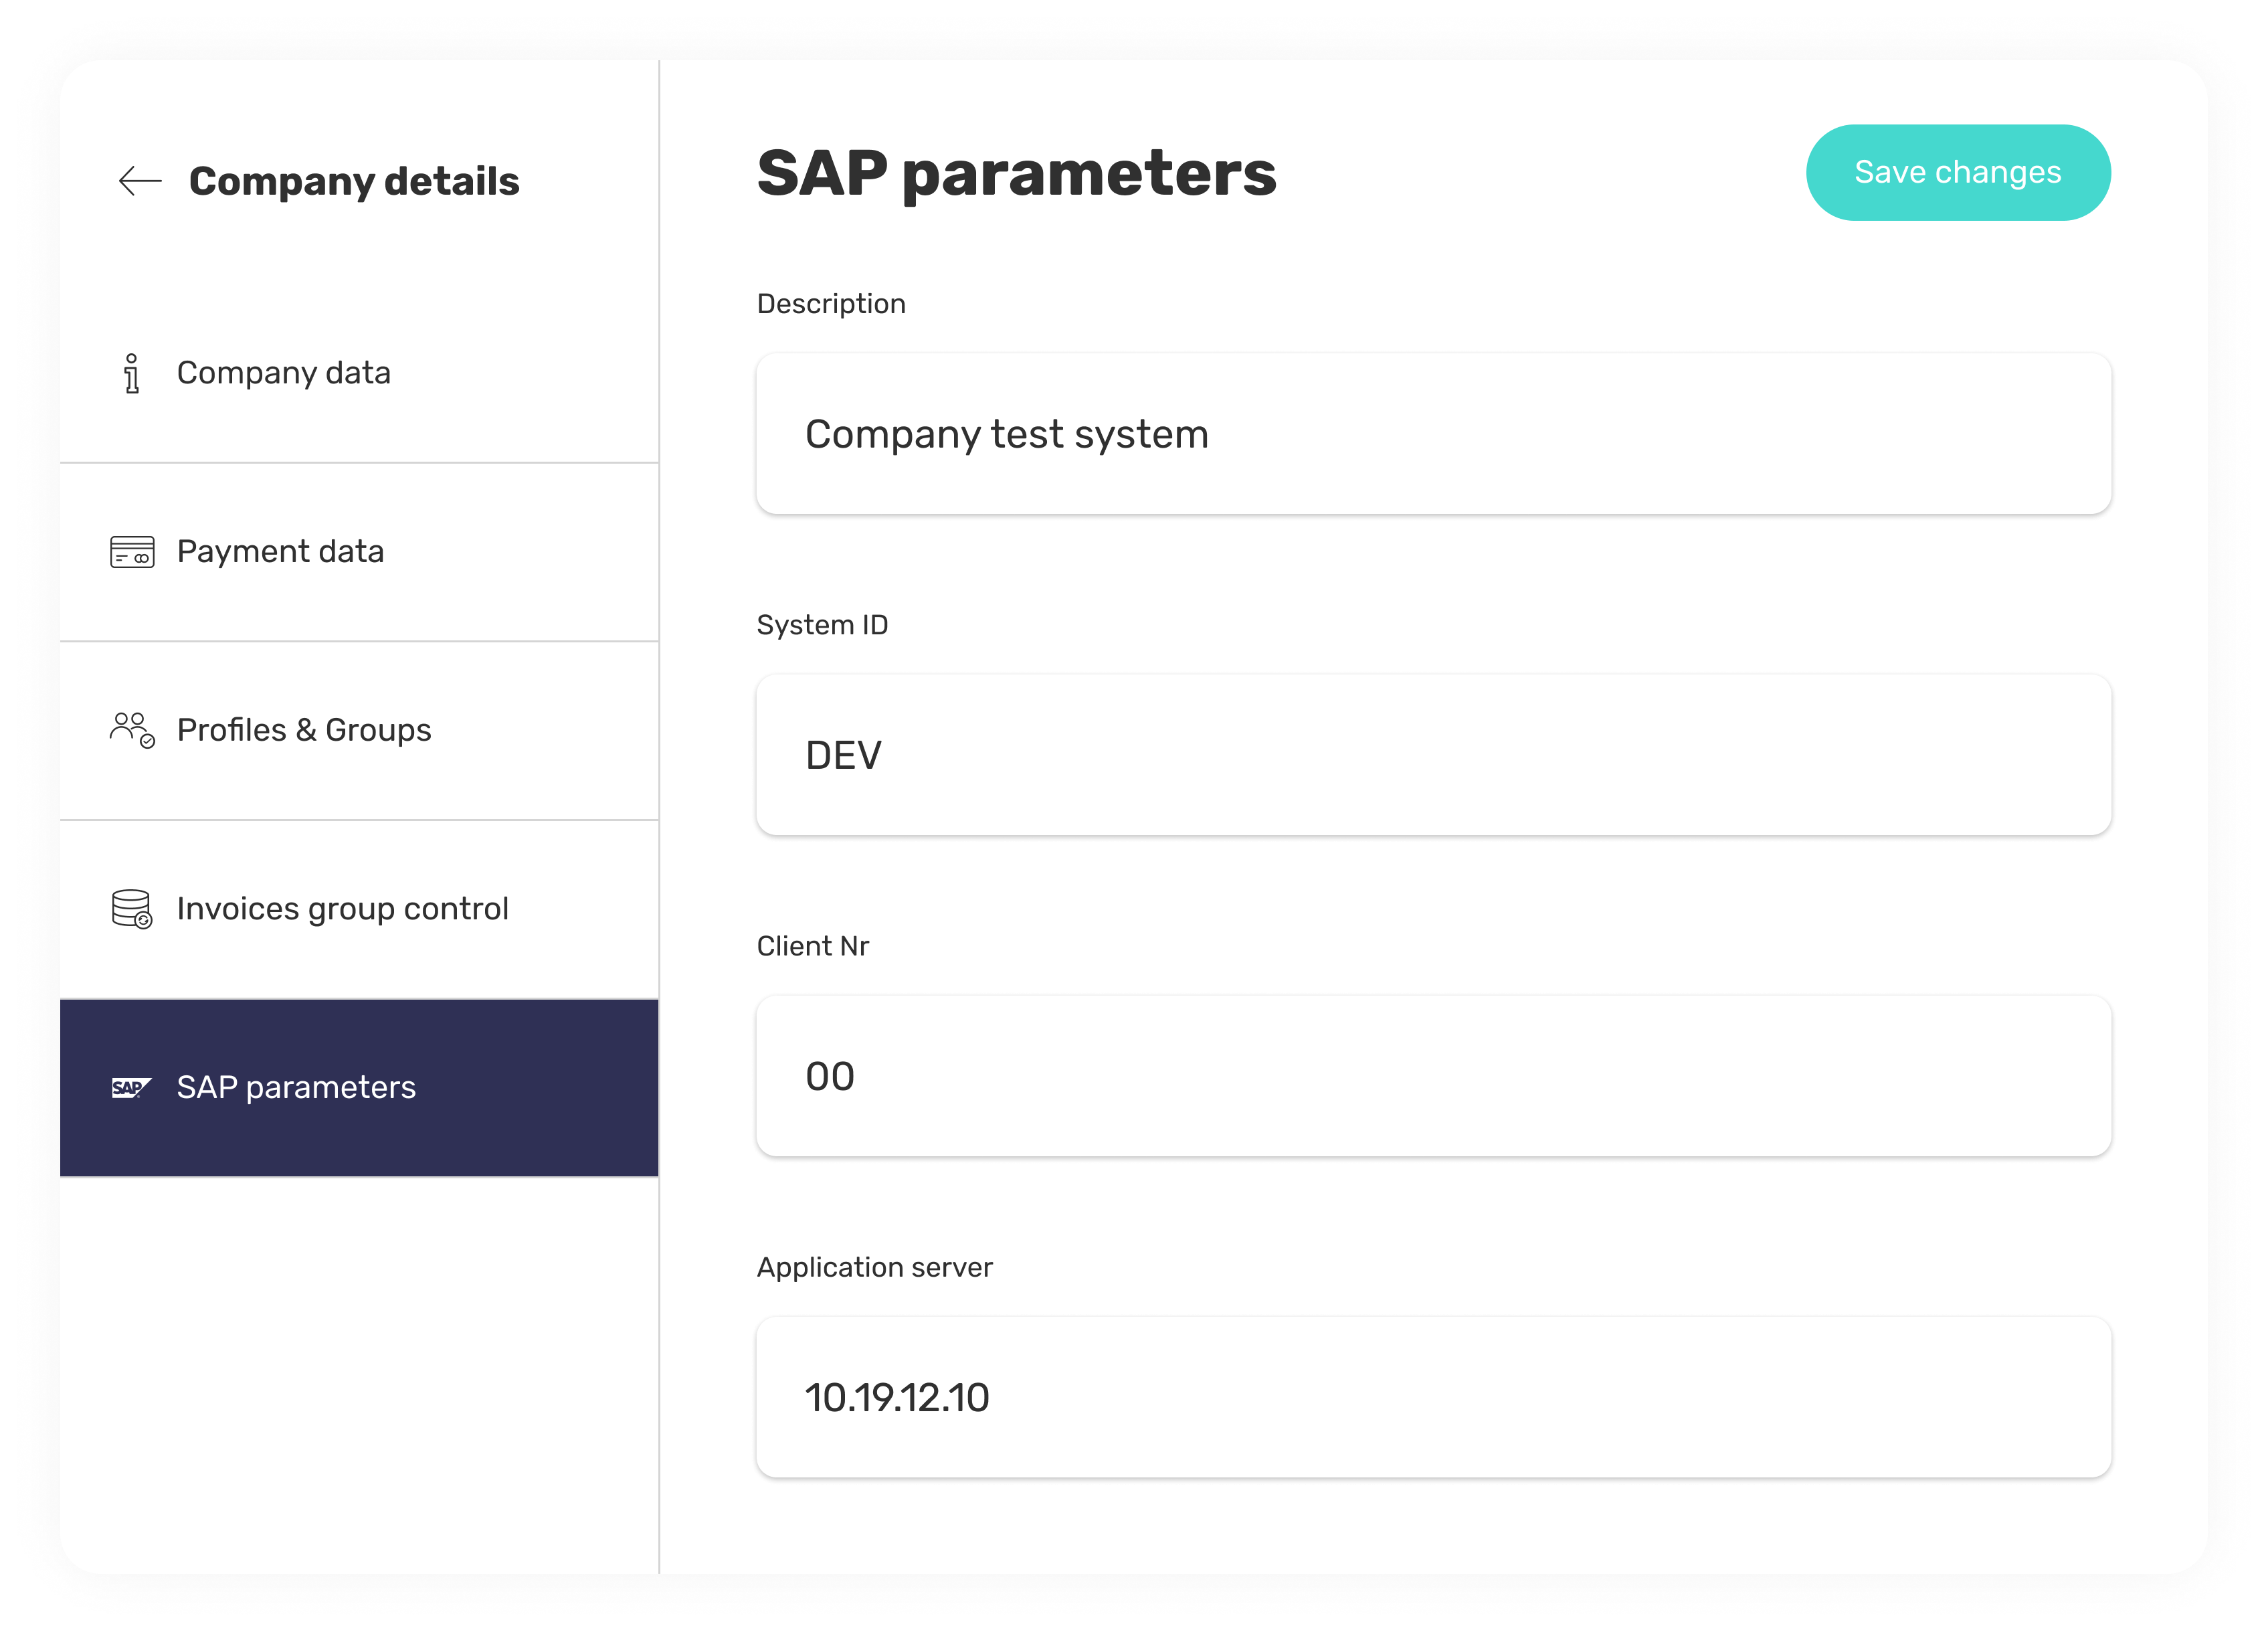 SAP parameters